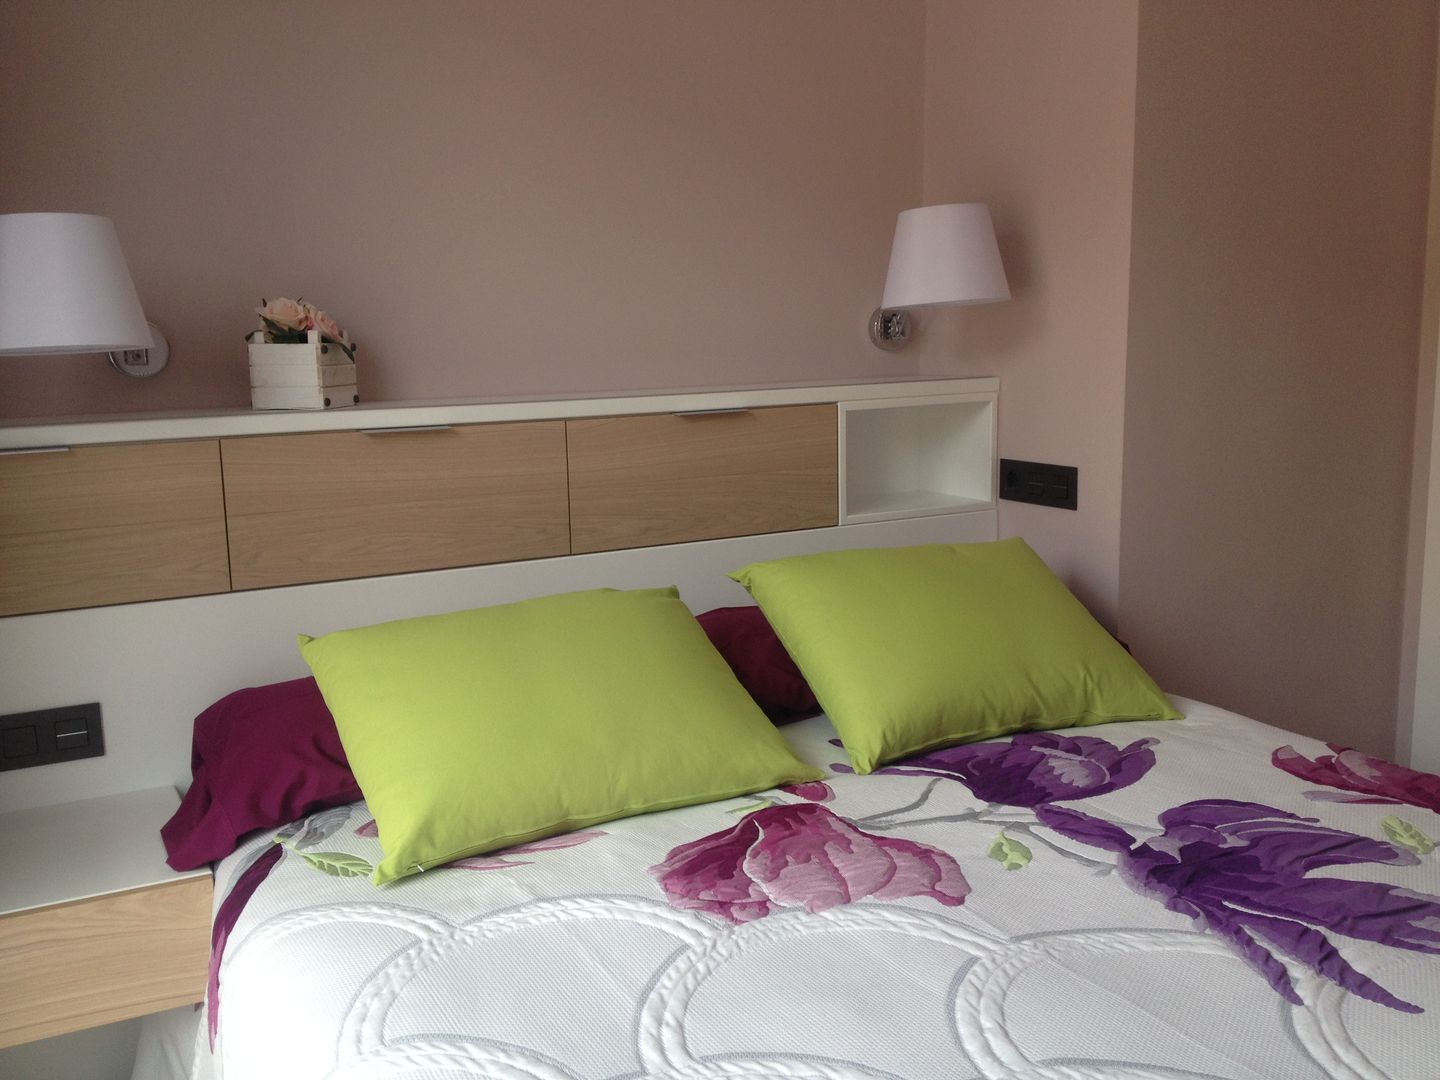 Dormitorio CLAU21 INTERIORISMO Y CONSTRUCCIÓN Dormitorios de estilo moderno Derivados de madera Transparente dormitorio,morado,violeta,pistacho,madera,blanco,rosa cuarzo,pintura de pared,lámpara de pared